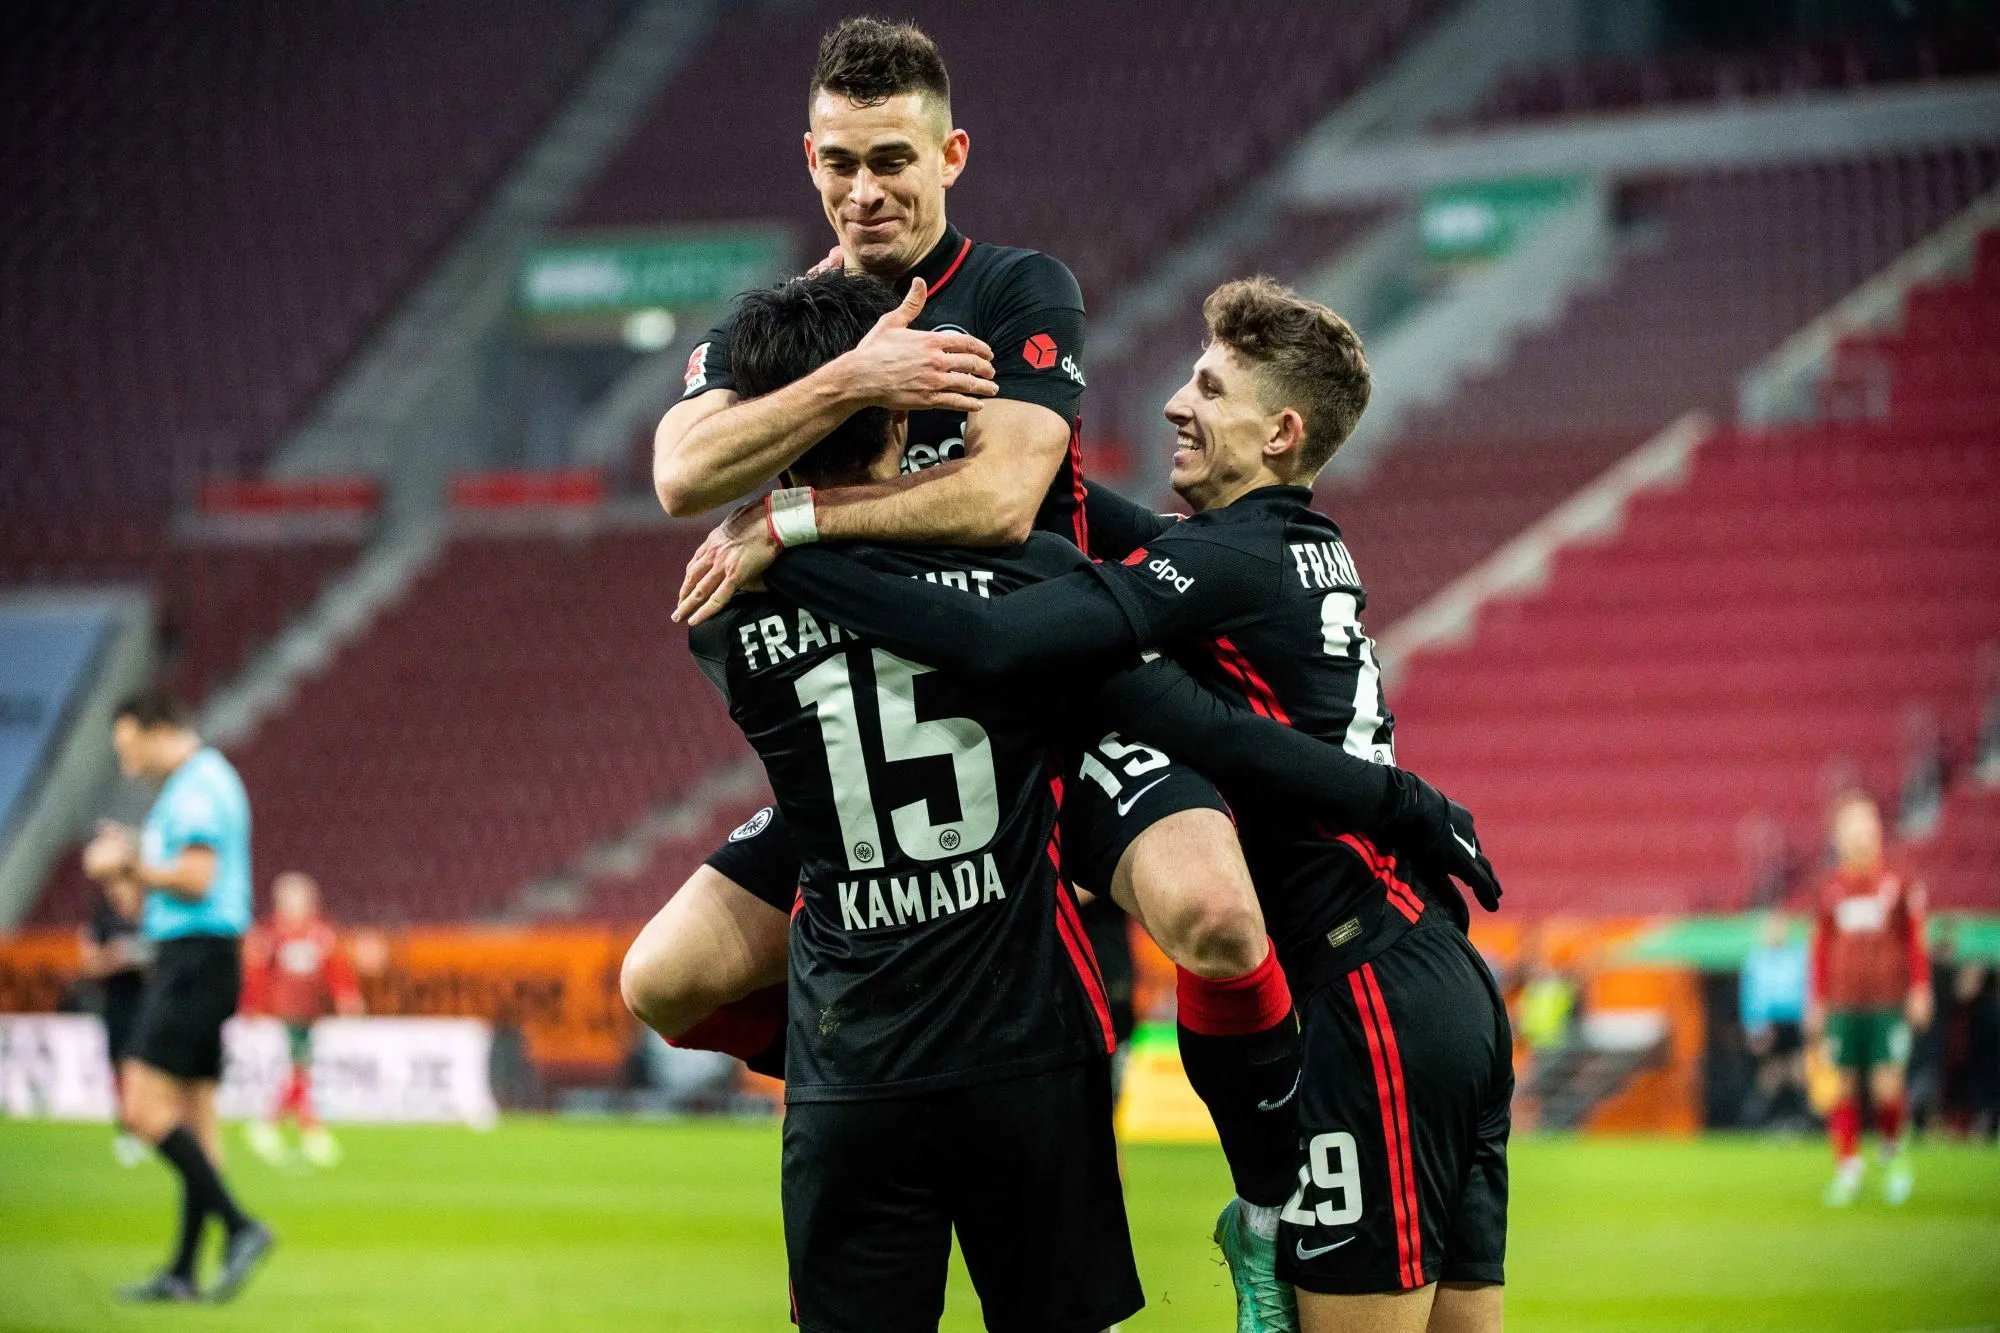 Pronostic Eintracht Francfort West Ham : Analyse, cotes et prono de la demi-finale retour de Ligue Europa